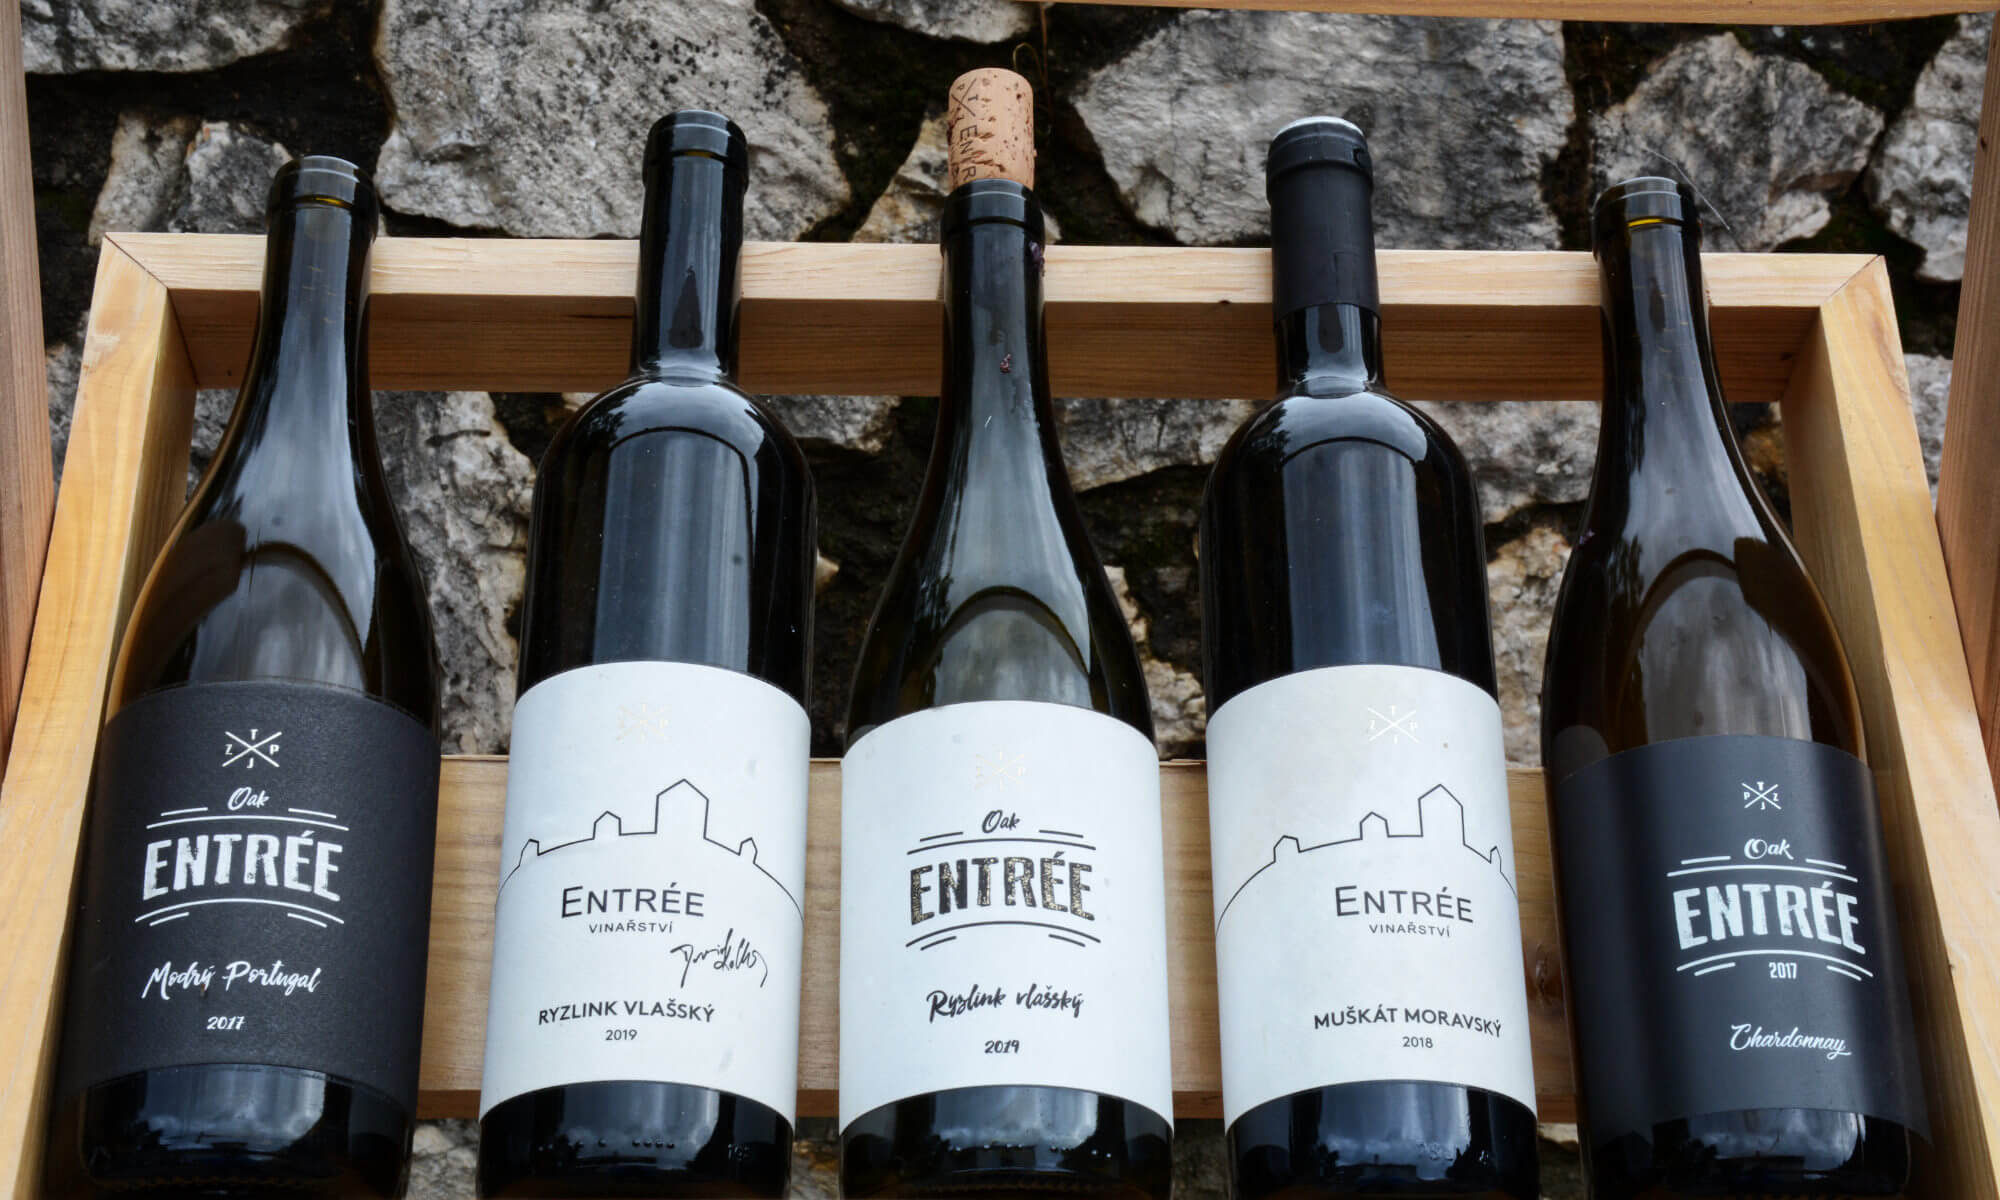 Vinná degustace z vinařství Entrée